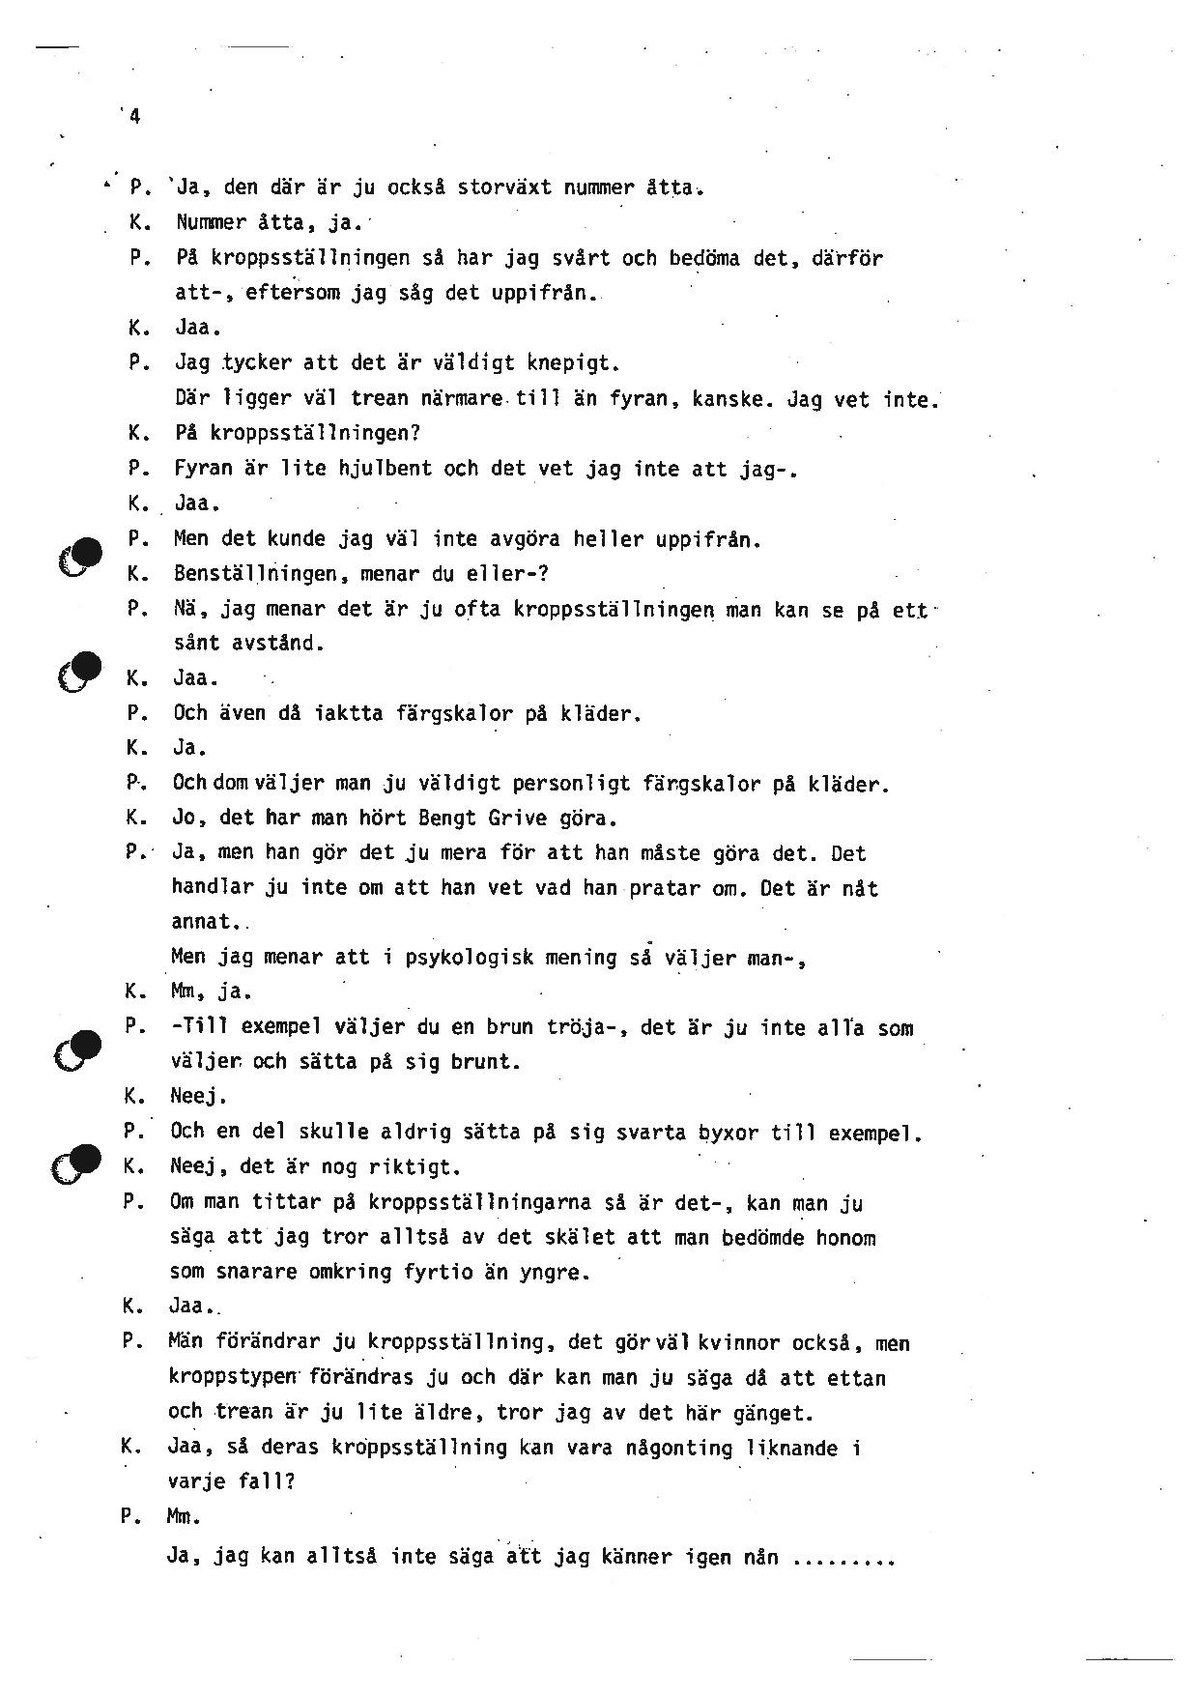 Pol-1986-04-24 T116-00-J LibethPalme.pdf